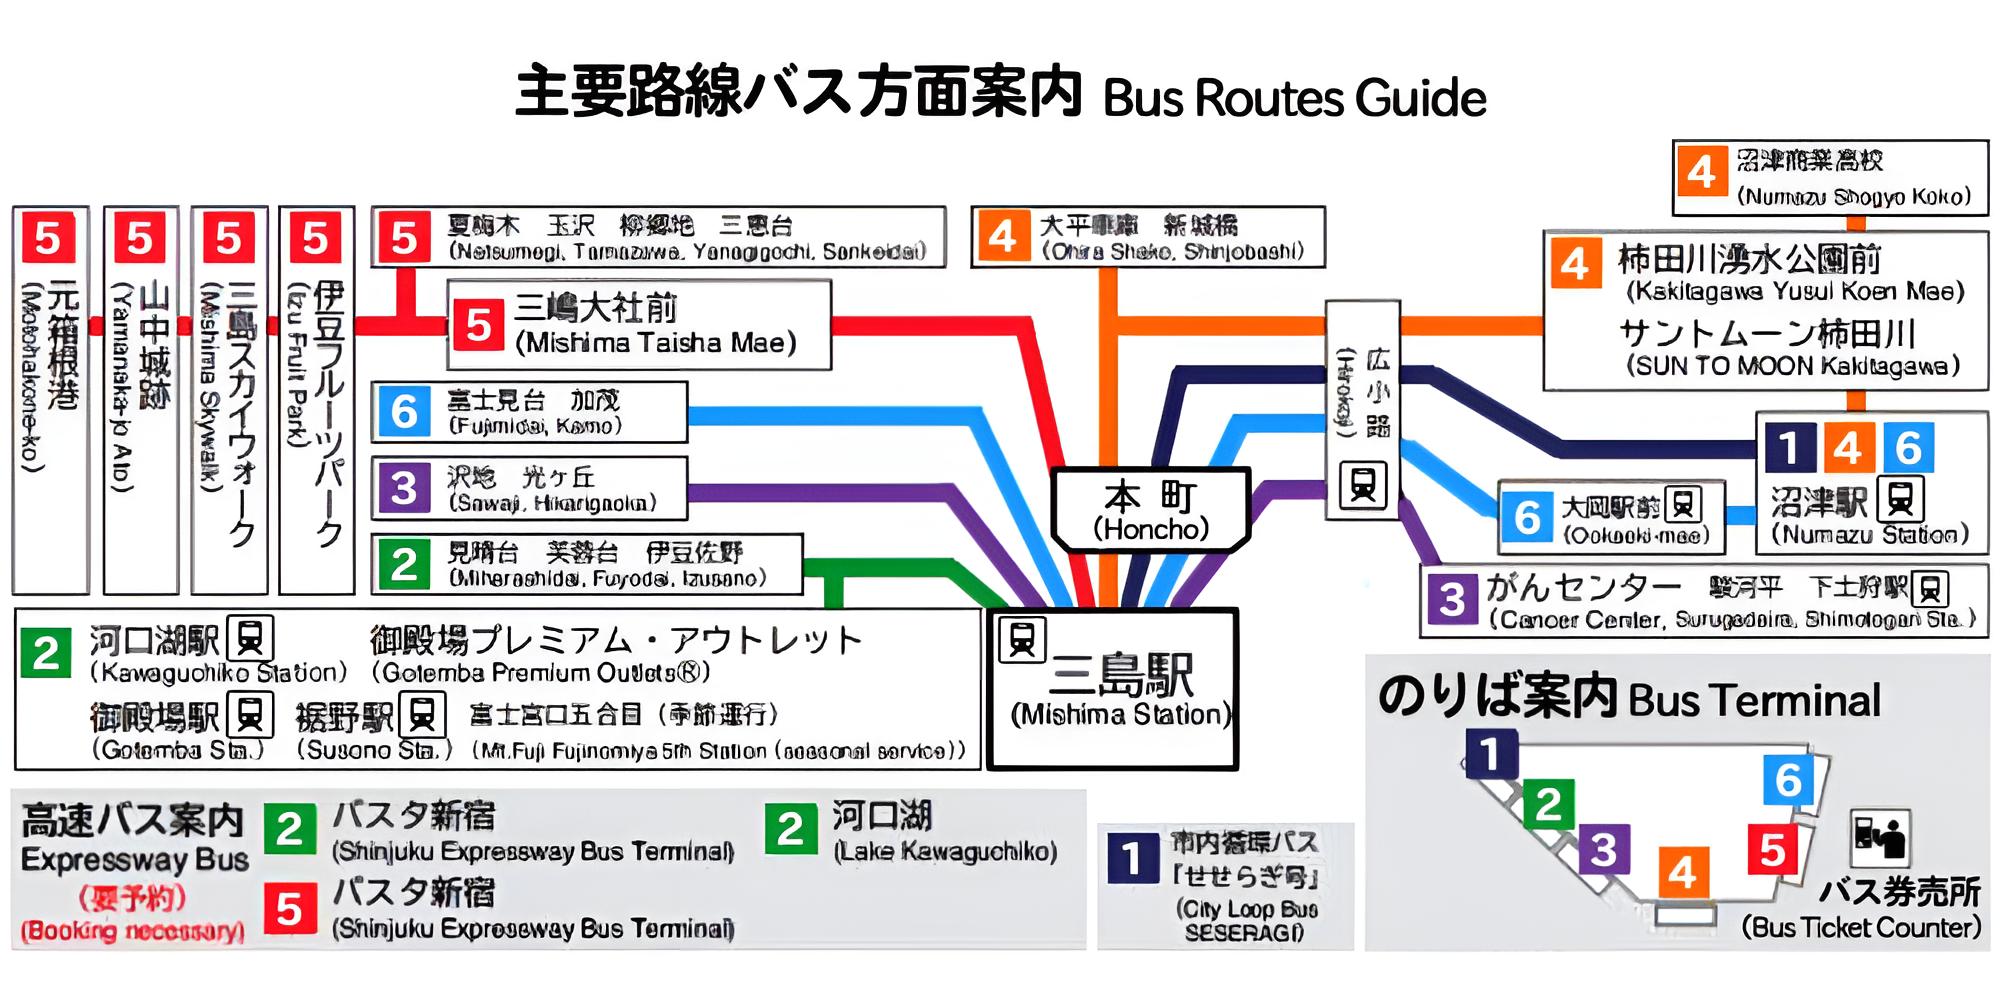 三島駅南口バスターミナル乗り場案内図・主要路線バス方面案内図